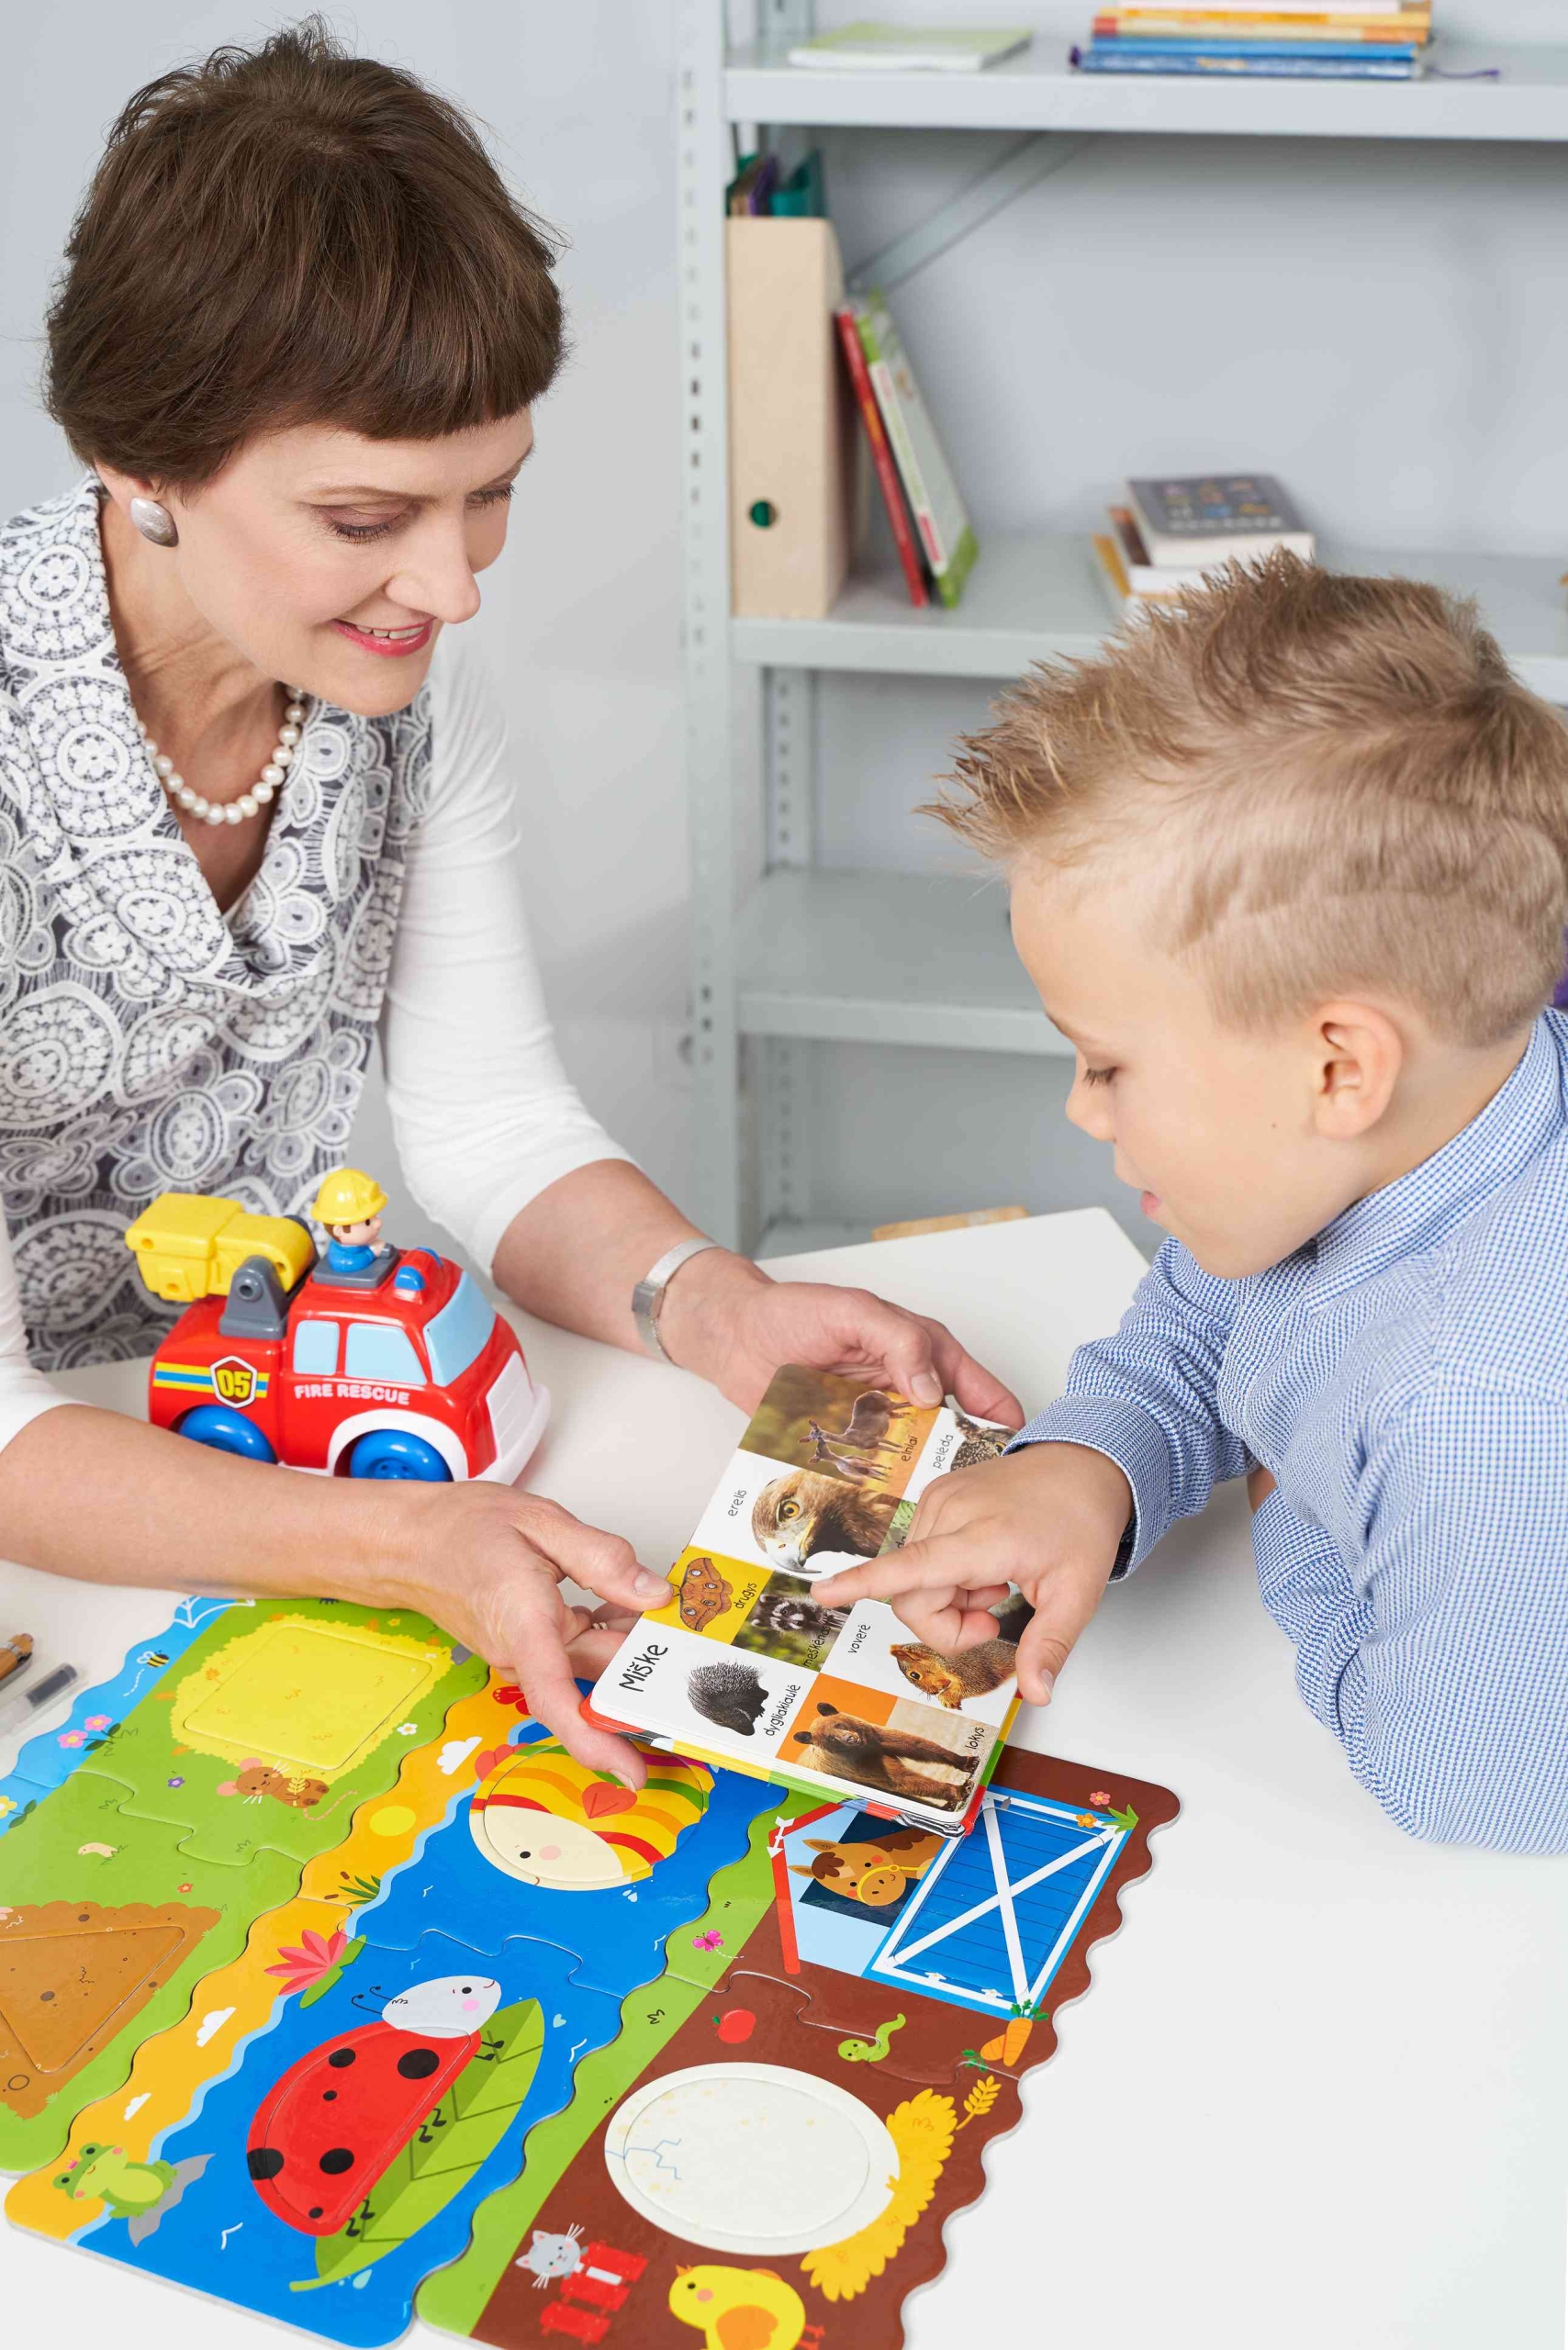 Logopedė Gražina Tumienė mokina vaiką logopedinio užsiėmimo metu. Rodomos kortelės ir lavinami vaiko motoriniai ir vizualiniai įgūdžiai.